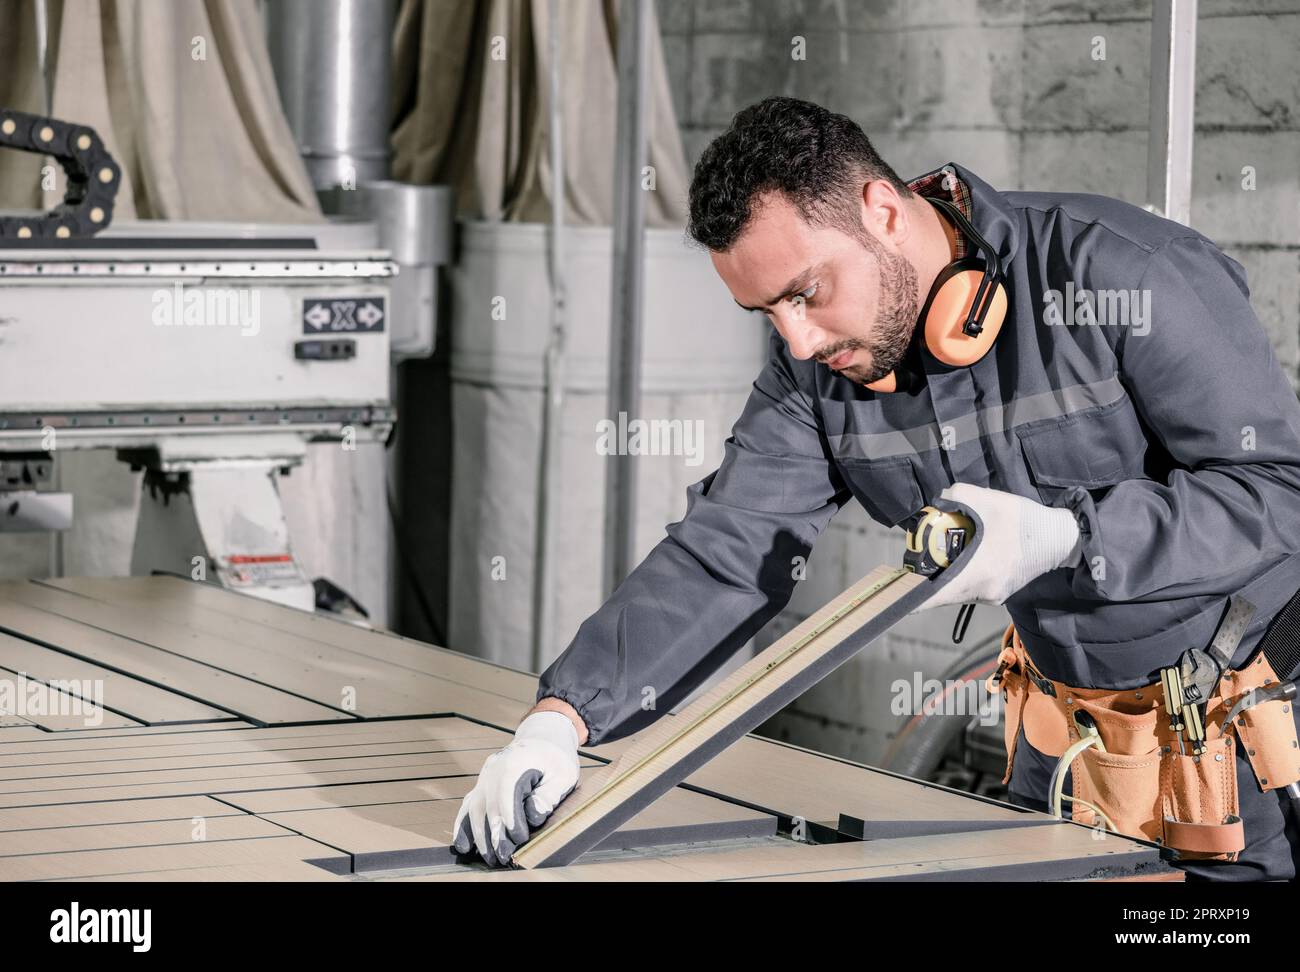 Holzwender messen und berechnen die richtige Größe des Werkstücks mit Hand- und Elektrowerkzeugen. Schneiden, Formen, Drehen, Glätten und Ausbalancieren von Holzbefestigungen Stockfoto